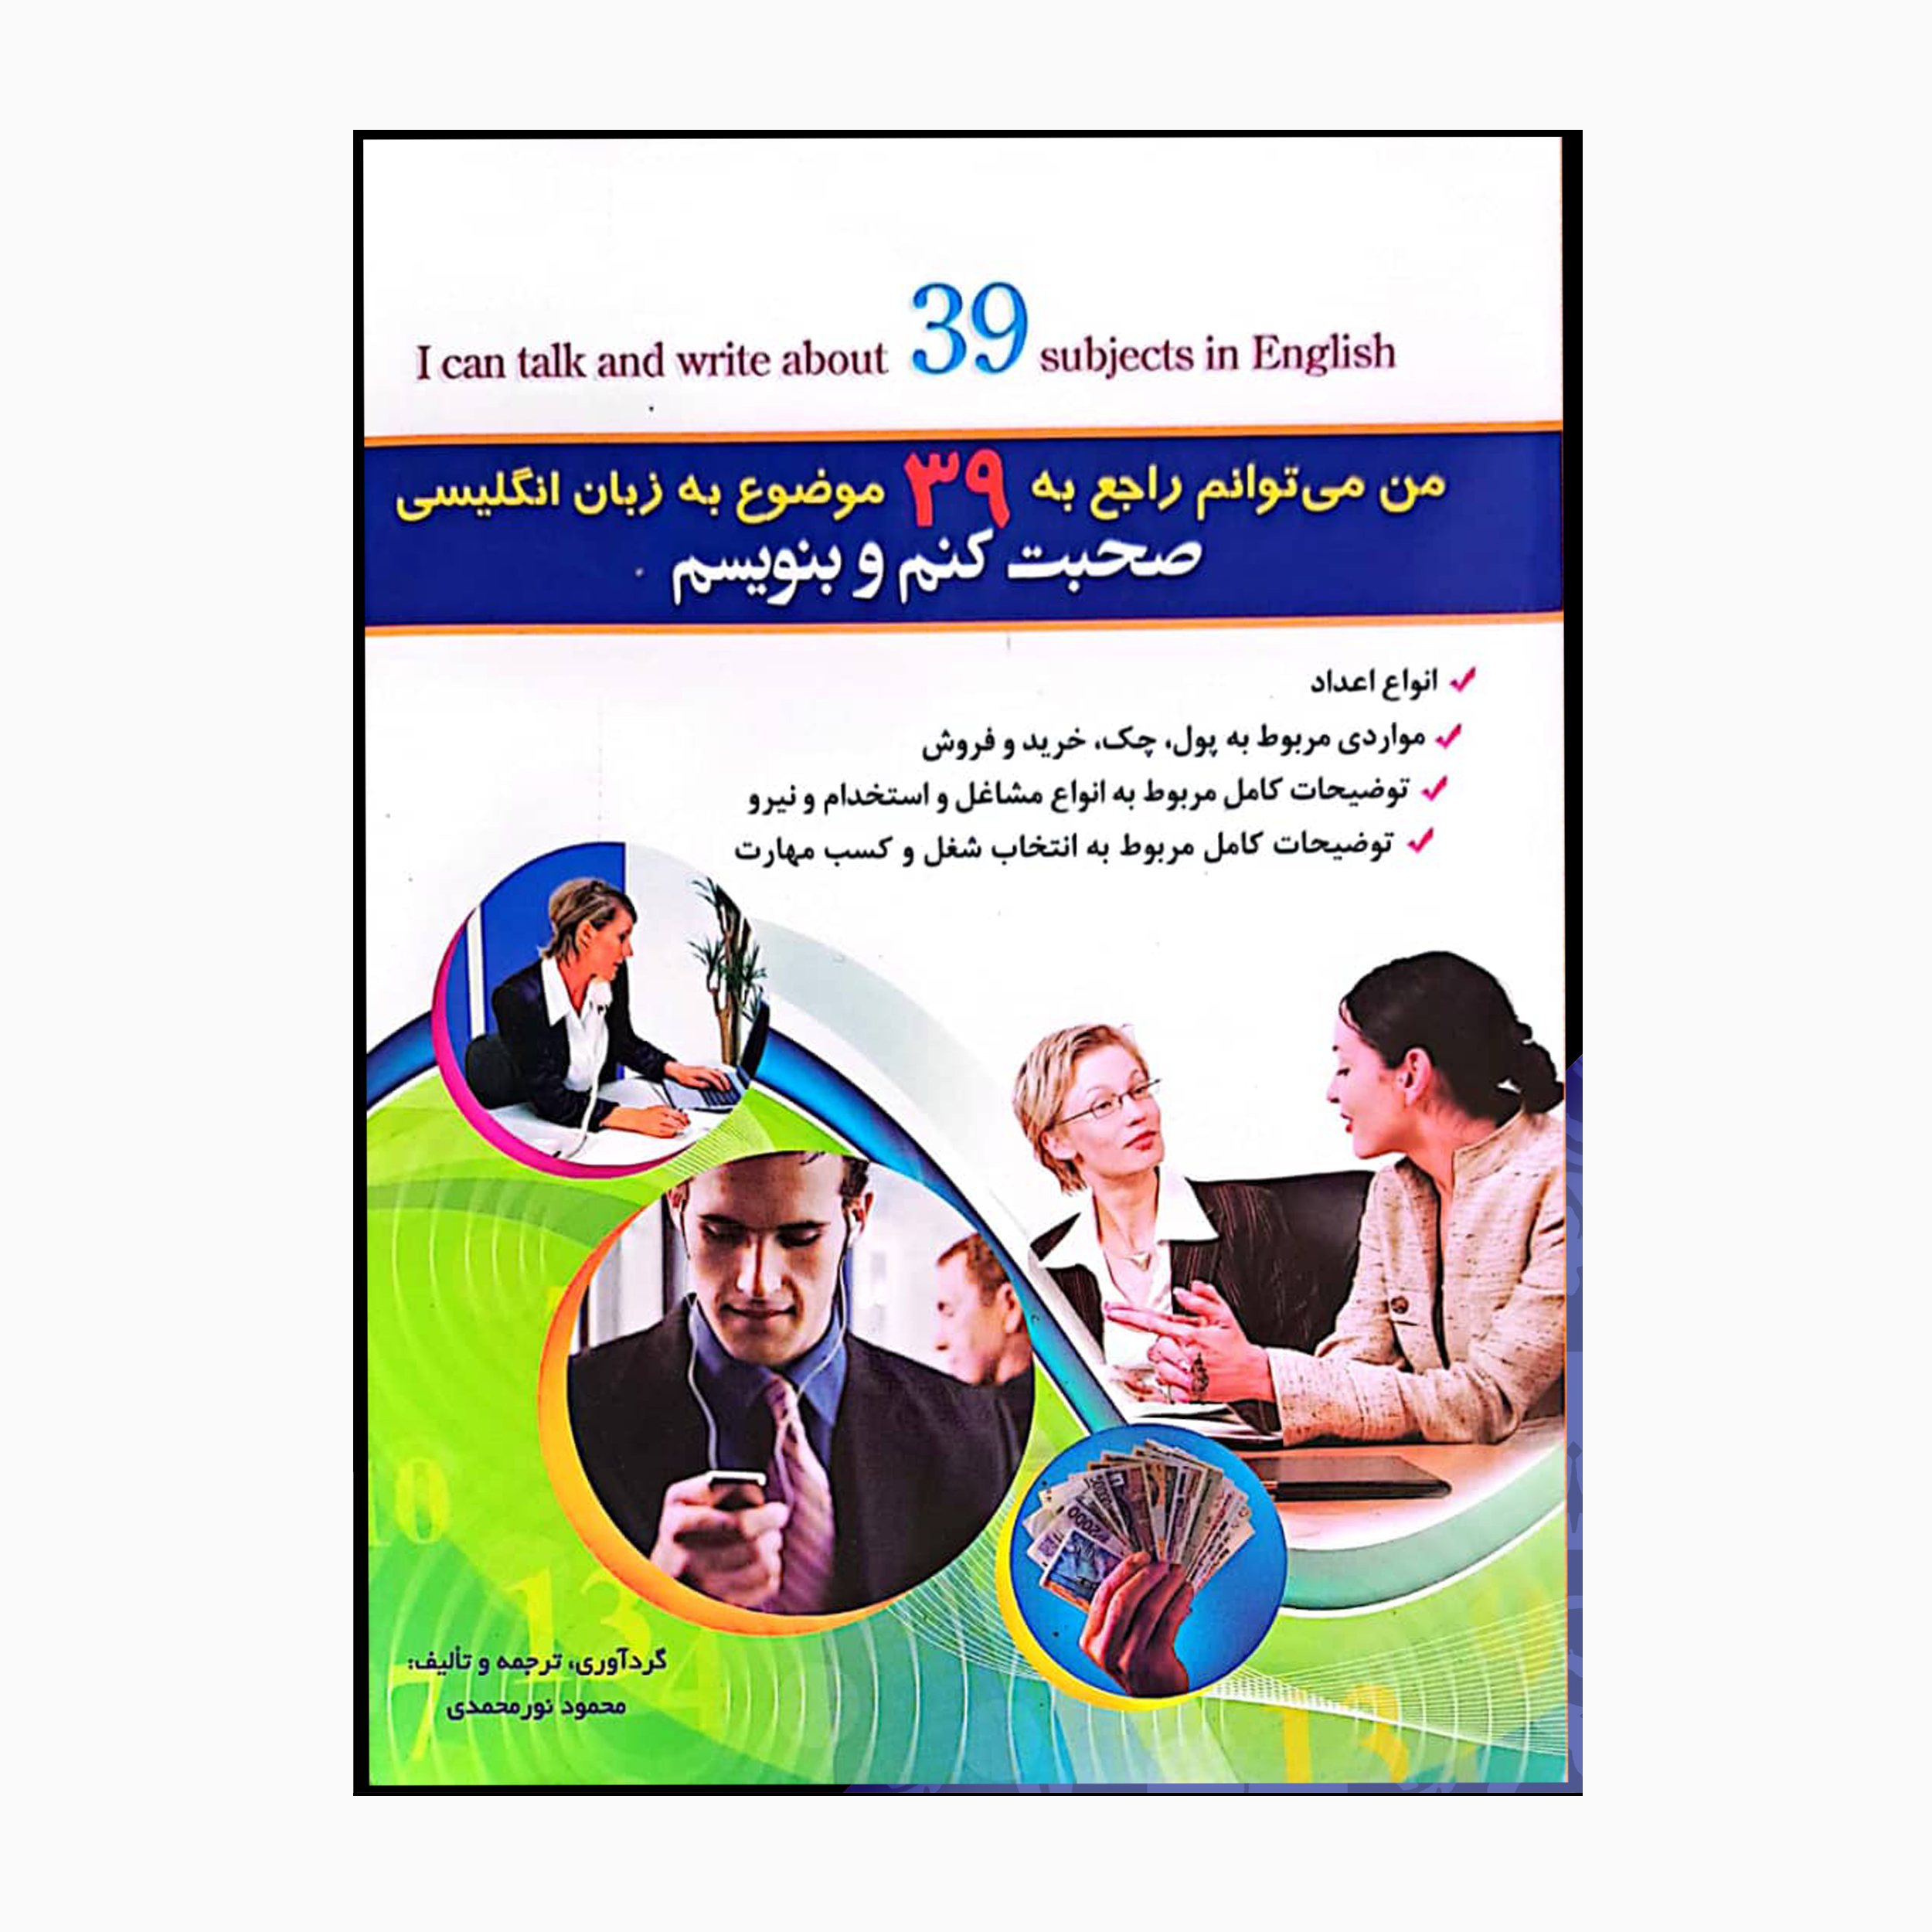 کتاب من میتوانم راجع به 39 موضوع به زبان انگلیسی صحبت کنم اثر محمود نورمحمدی انتشارات خانه زبان